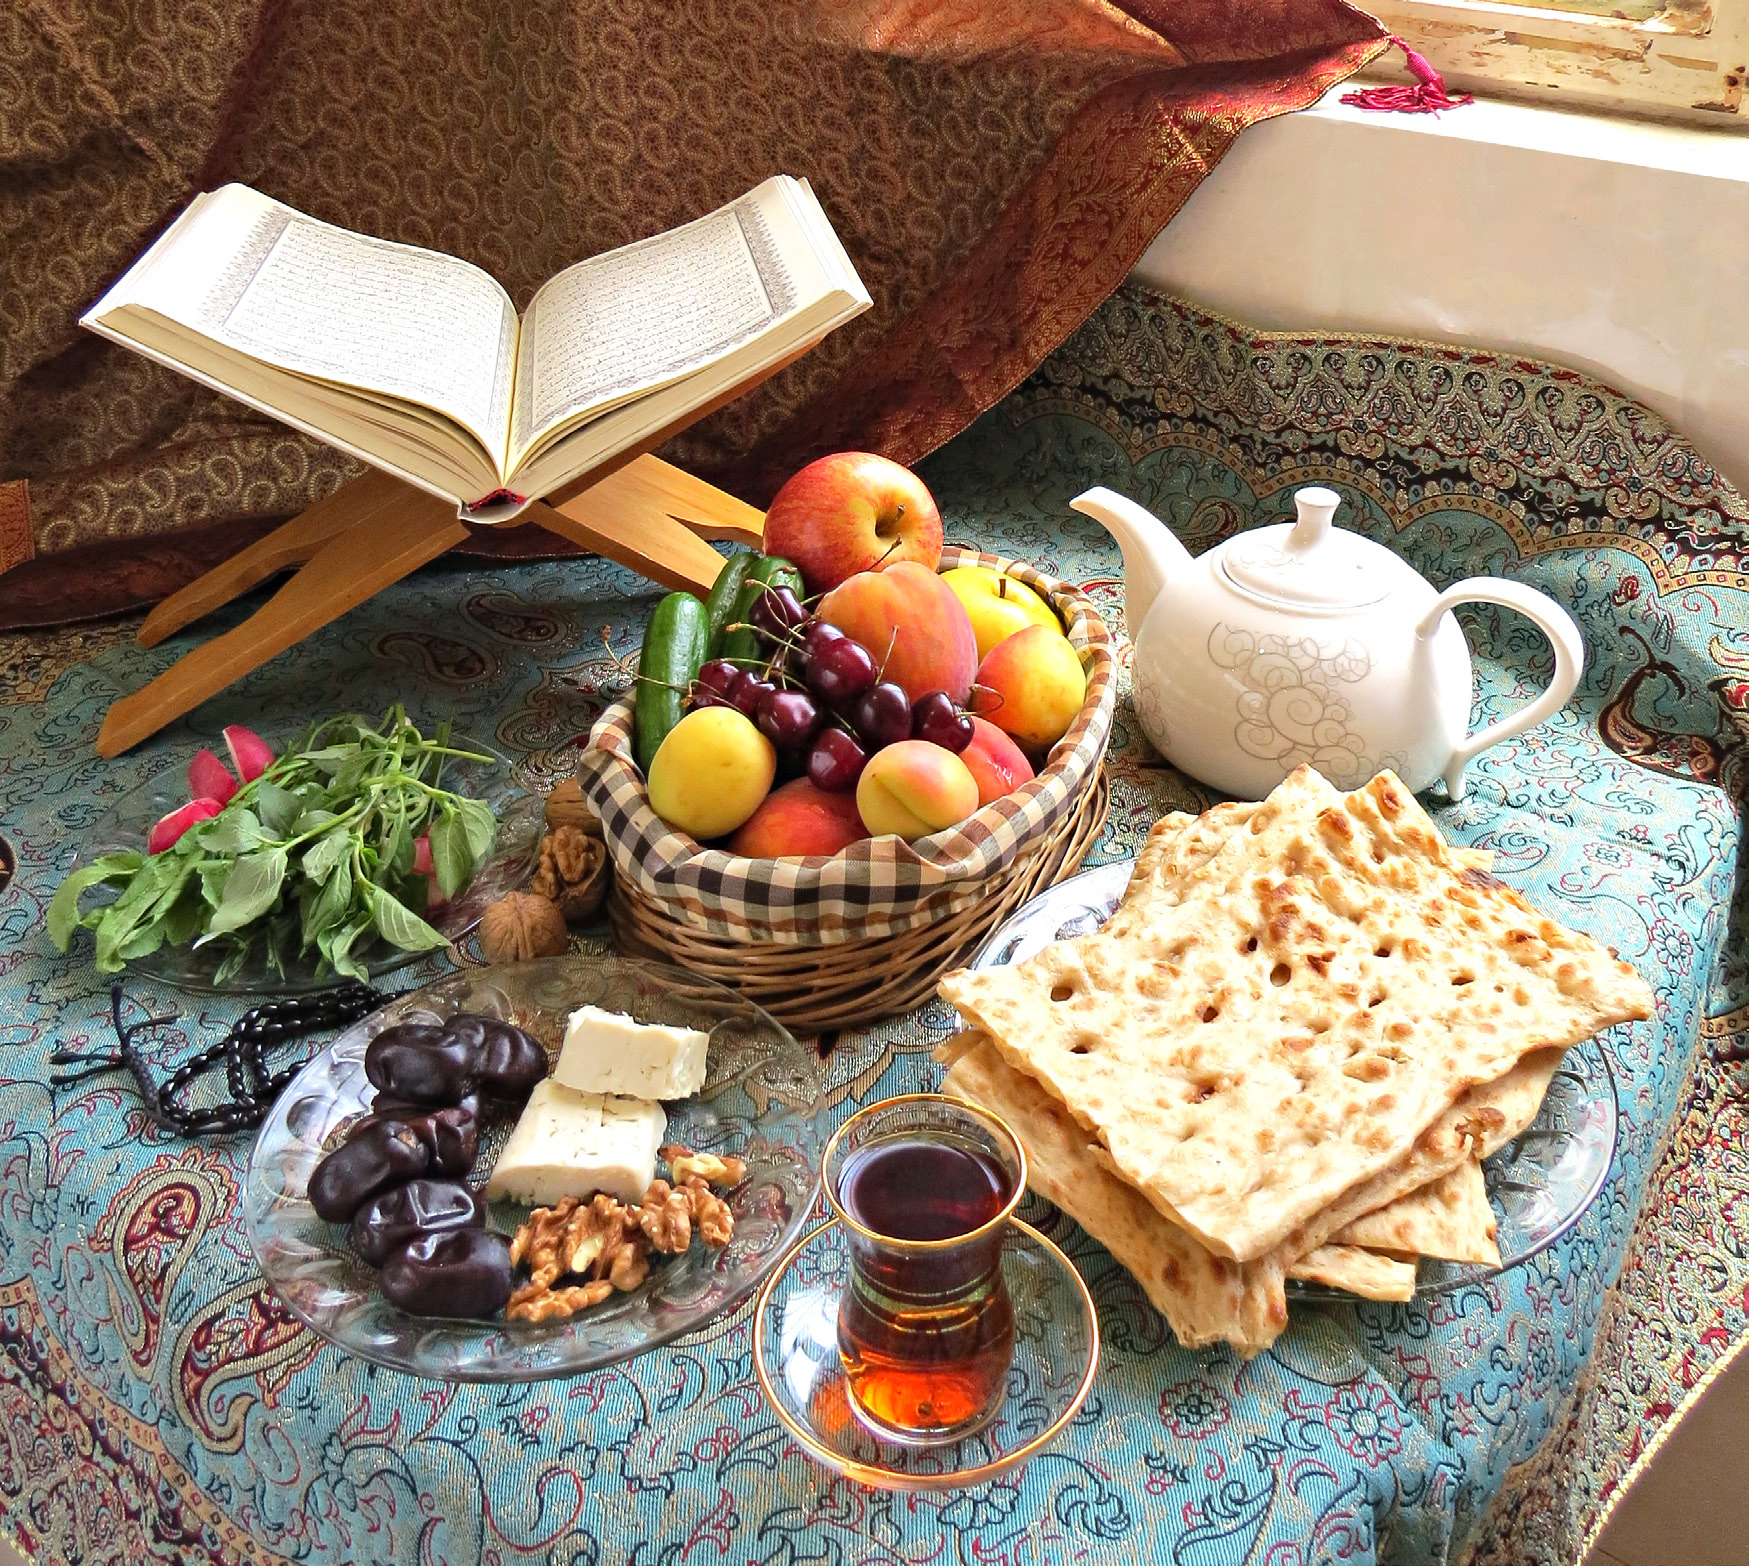  برای جلوگیری از گرسنگی در ماه رمضان این توصیه ها را آویزه گوشتان کنید